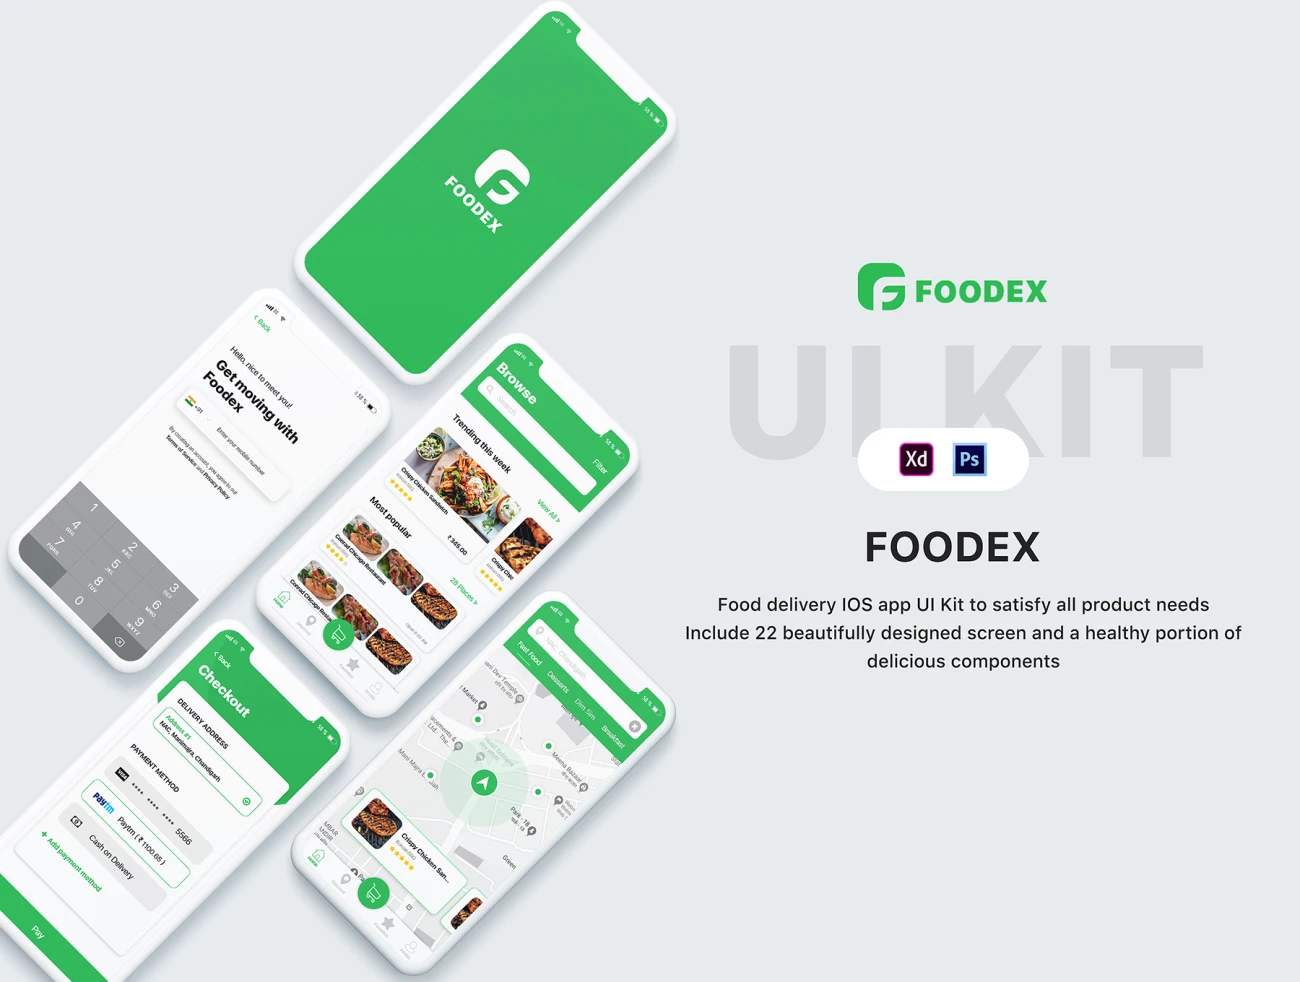 Foodex UI Kit 美食食材ui设计工具包-UI/UX、ui套件、主页、介绍、付款、列表、卡片式、地图、应用、引导页、支付、注册、登录页、着陆页、网站、网购-到位啦UI